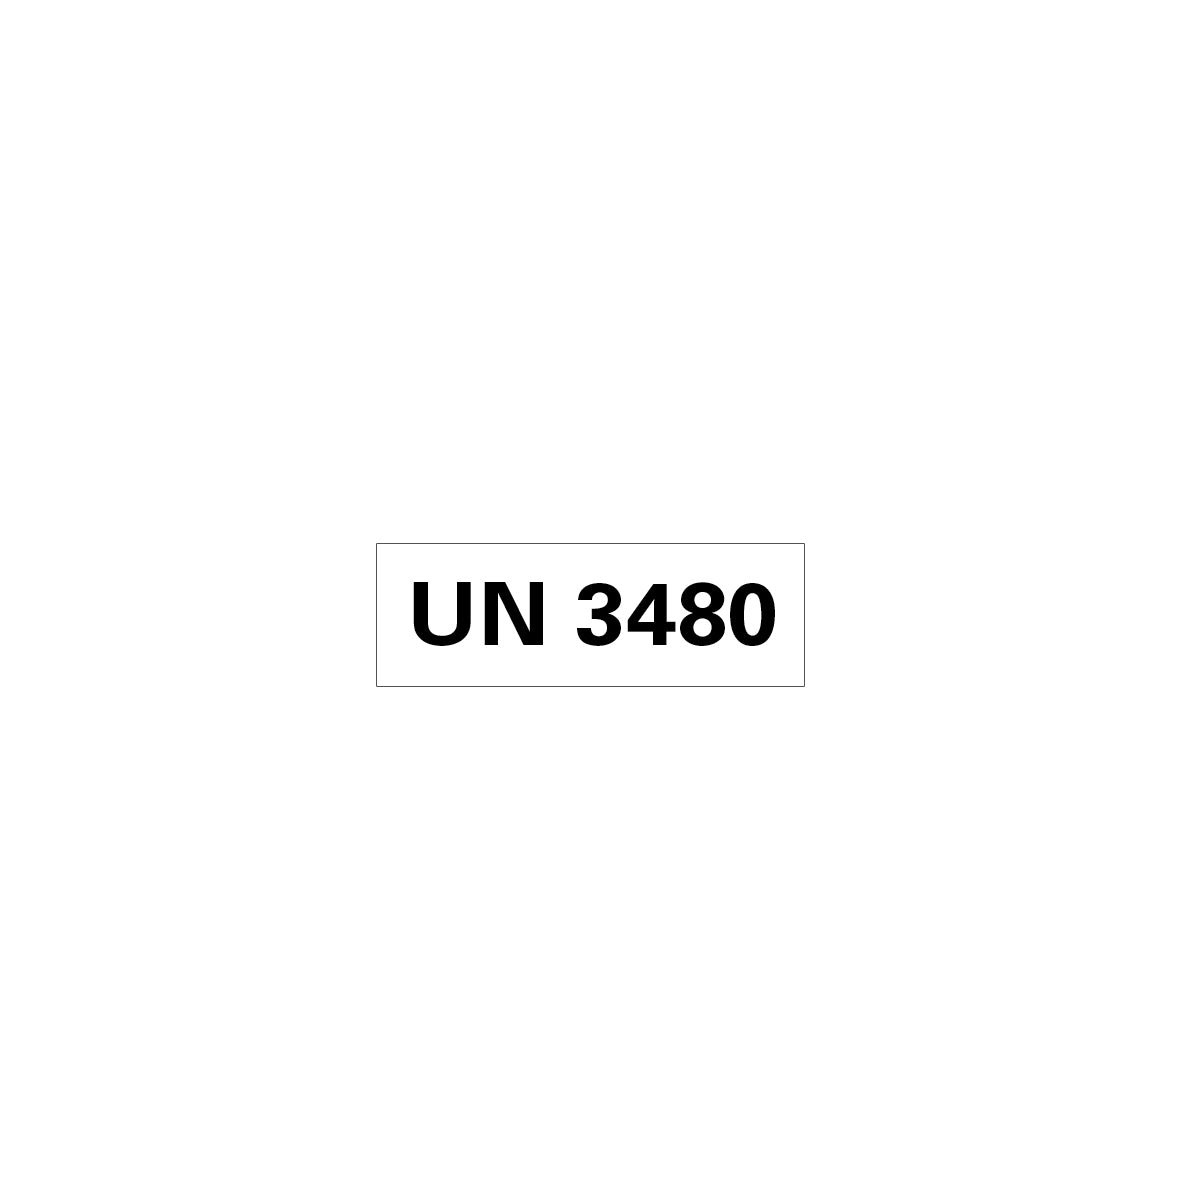 Gefahrgut UN, 5.0160.1, 150 x 50 mm, Stk., UN 3480 (Lithium-Ionen-Batterien), auf Bogen, VE 10 Stk.